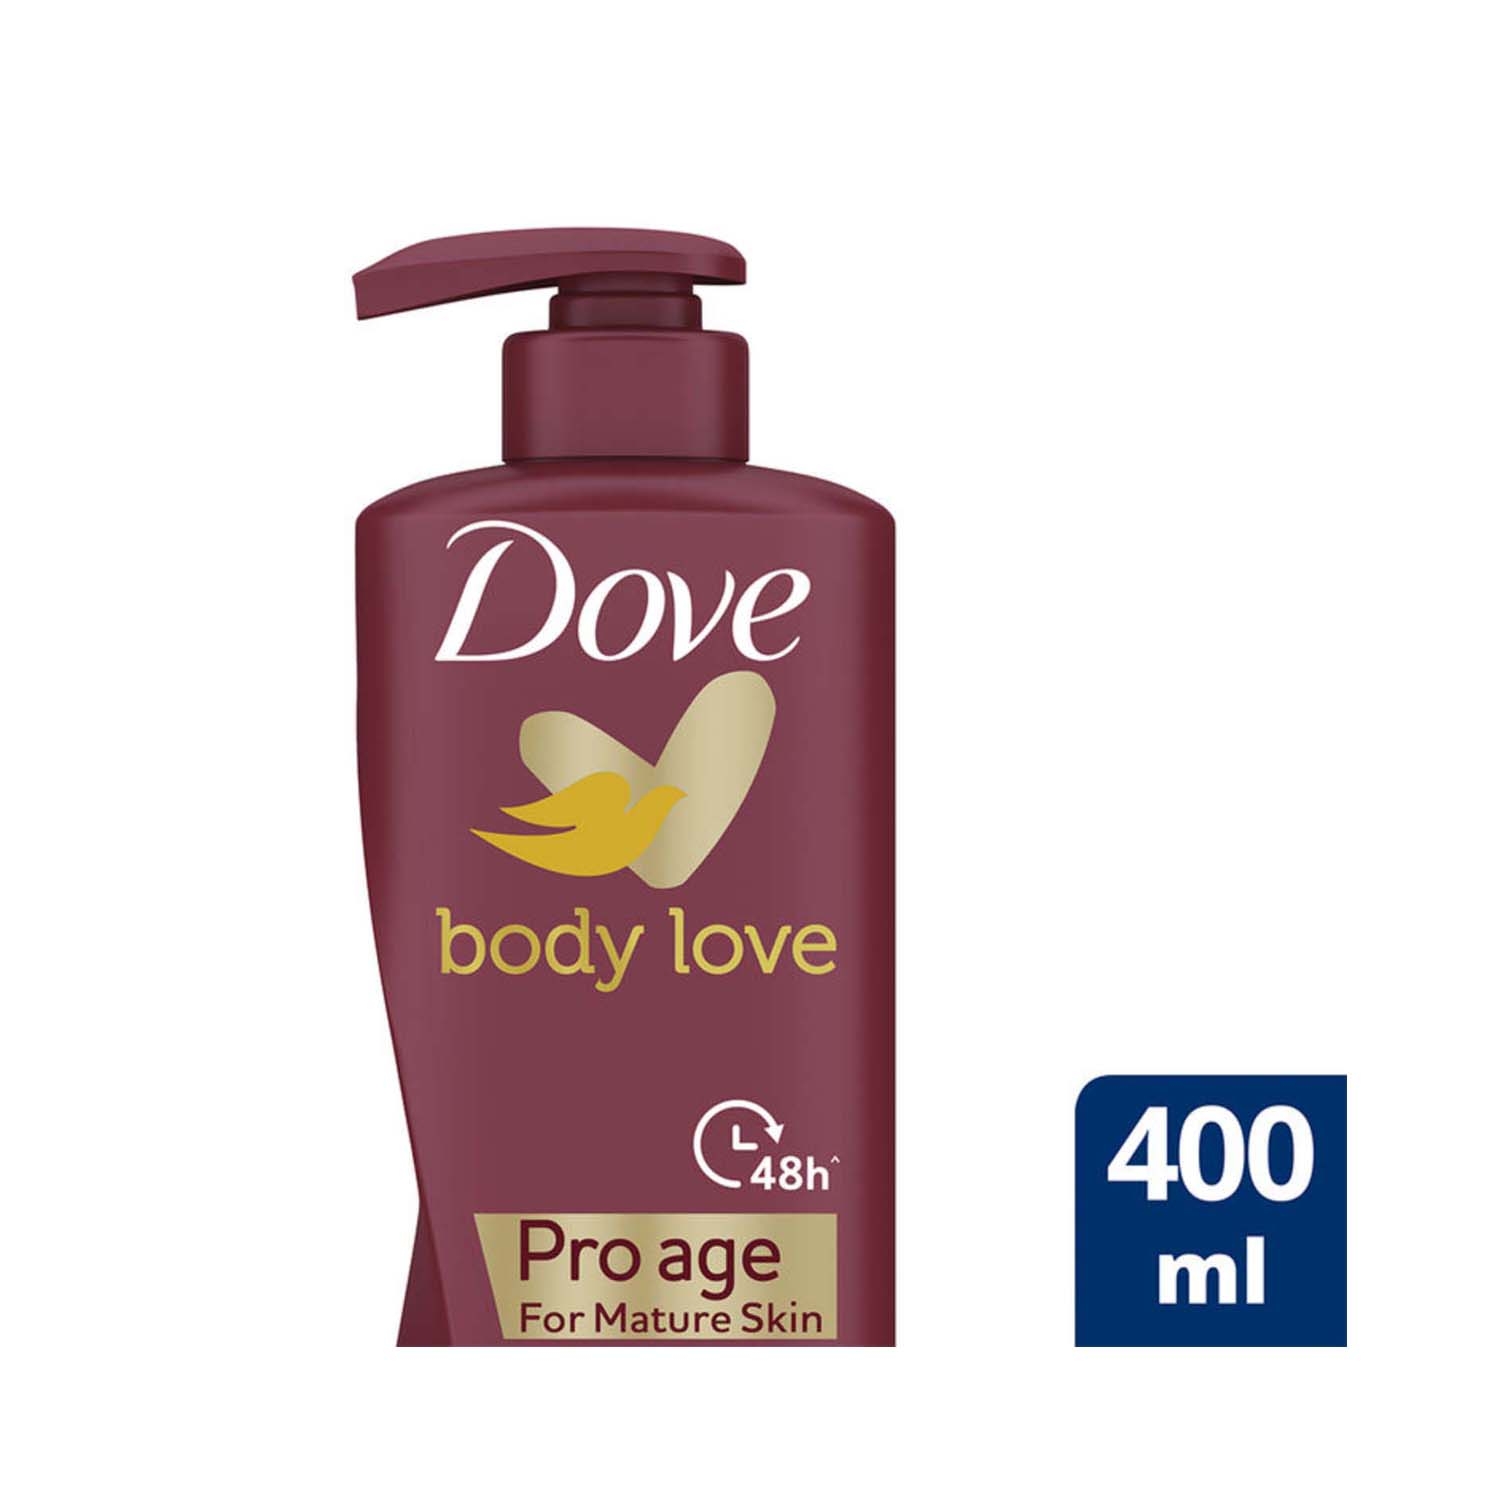 Dove Body Love Pro Age Body Lotion (400ml)